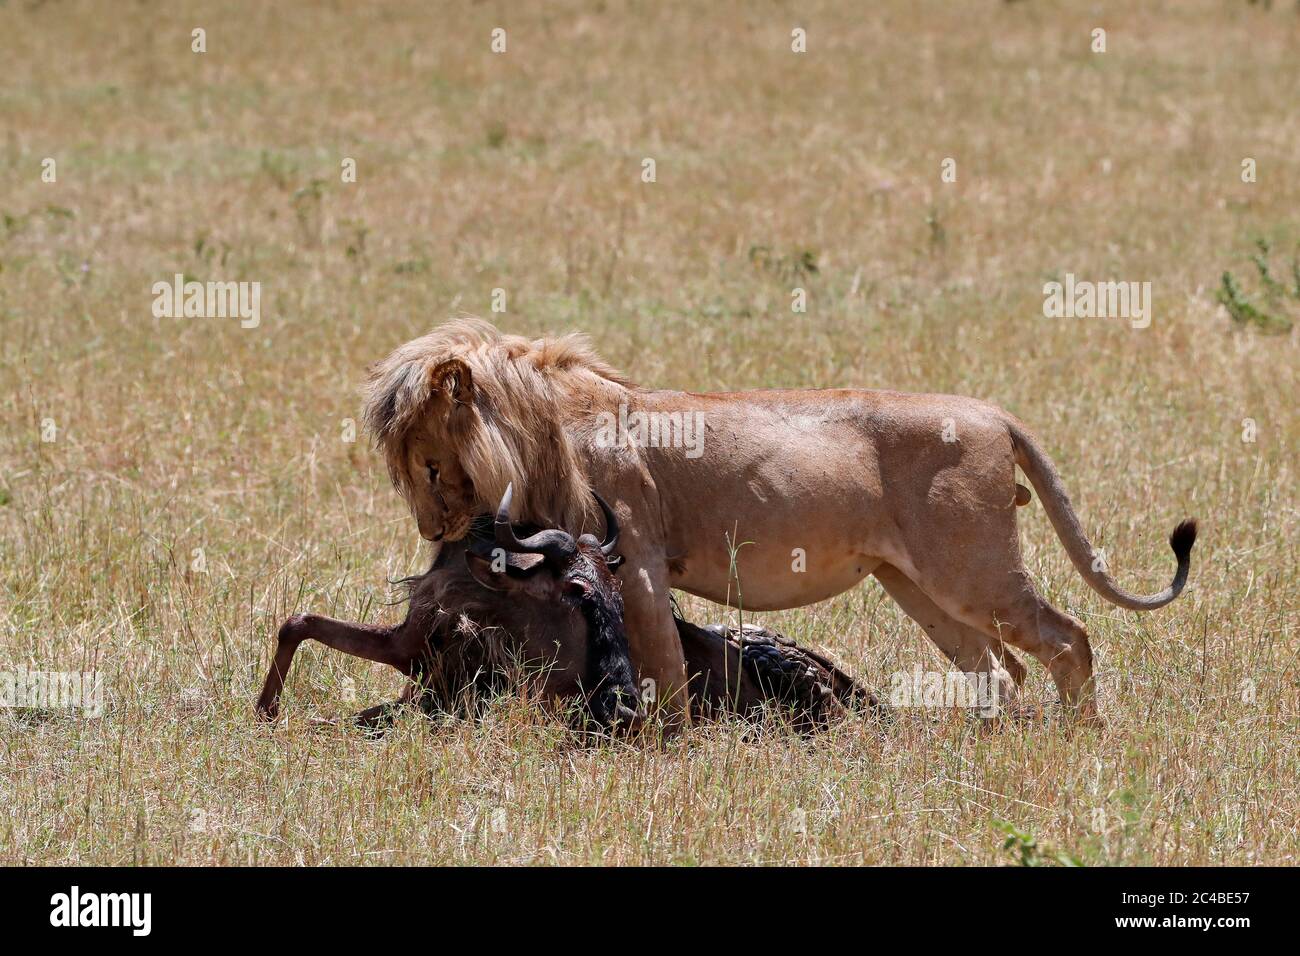 Lion (panthera leo) with wildebeest kill in savanna Stock Photo